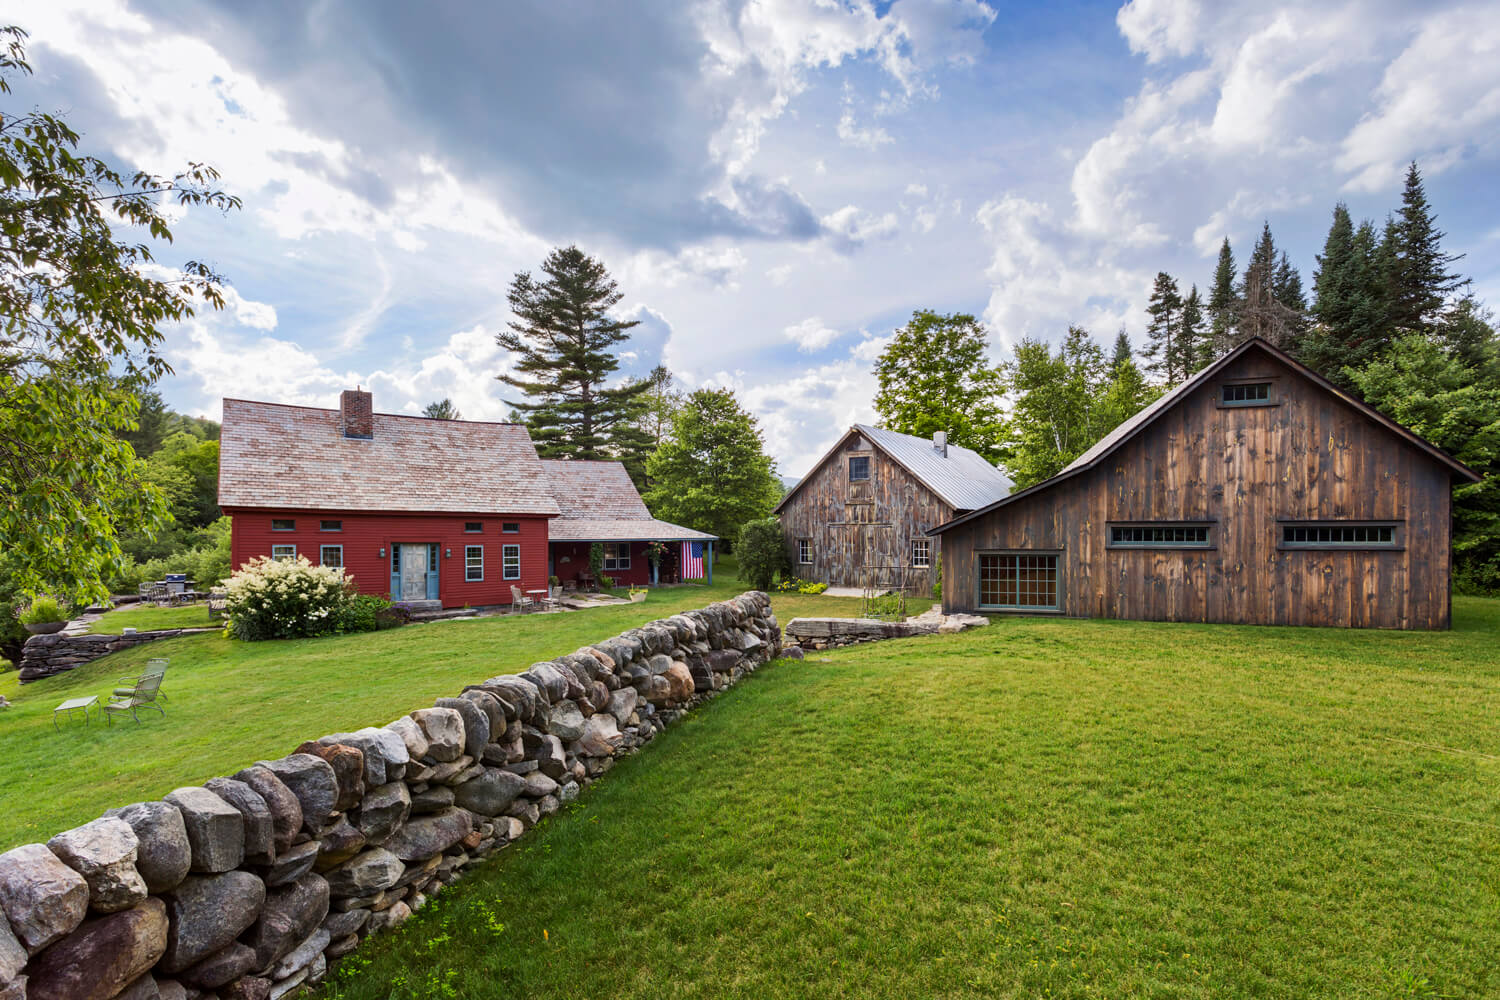 Rkla Studio Landscape Architecture, Vermont Landscape Architects